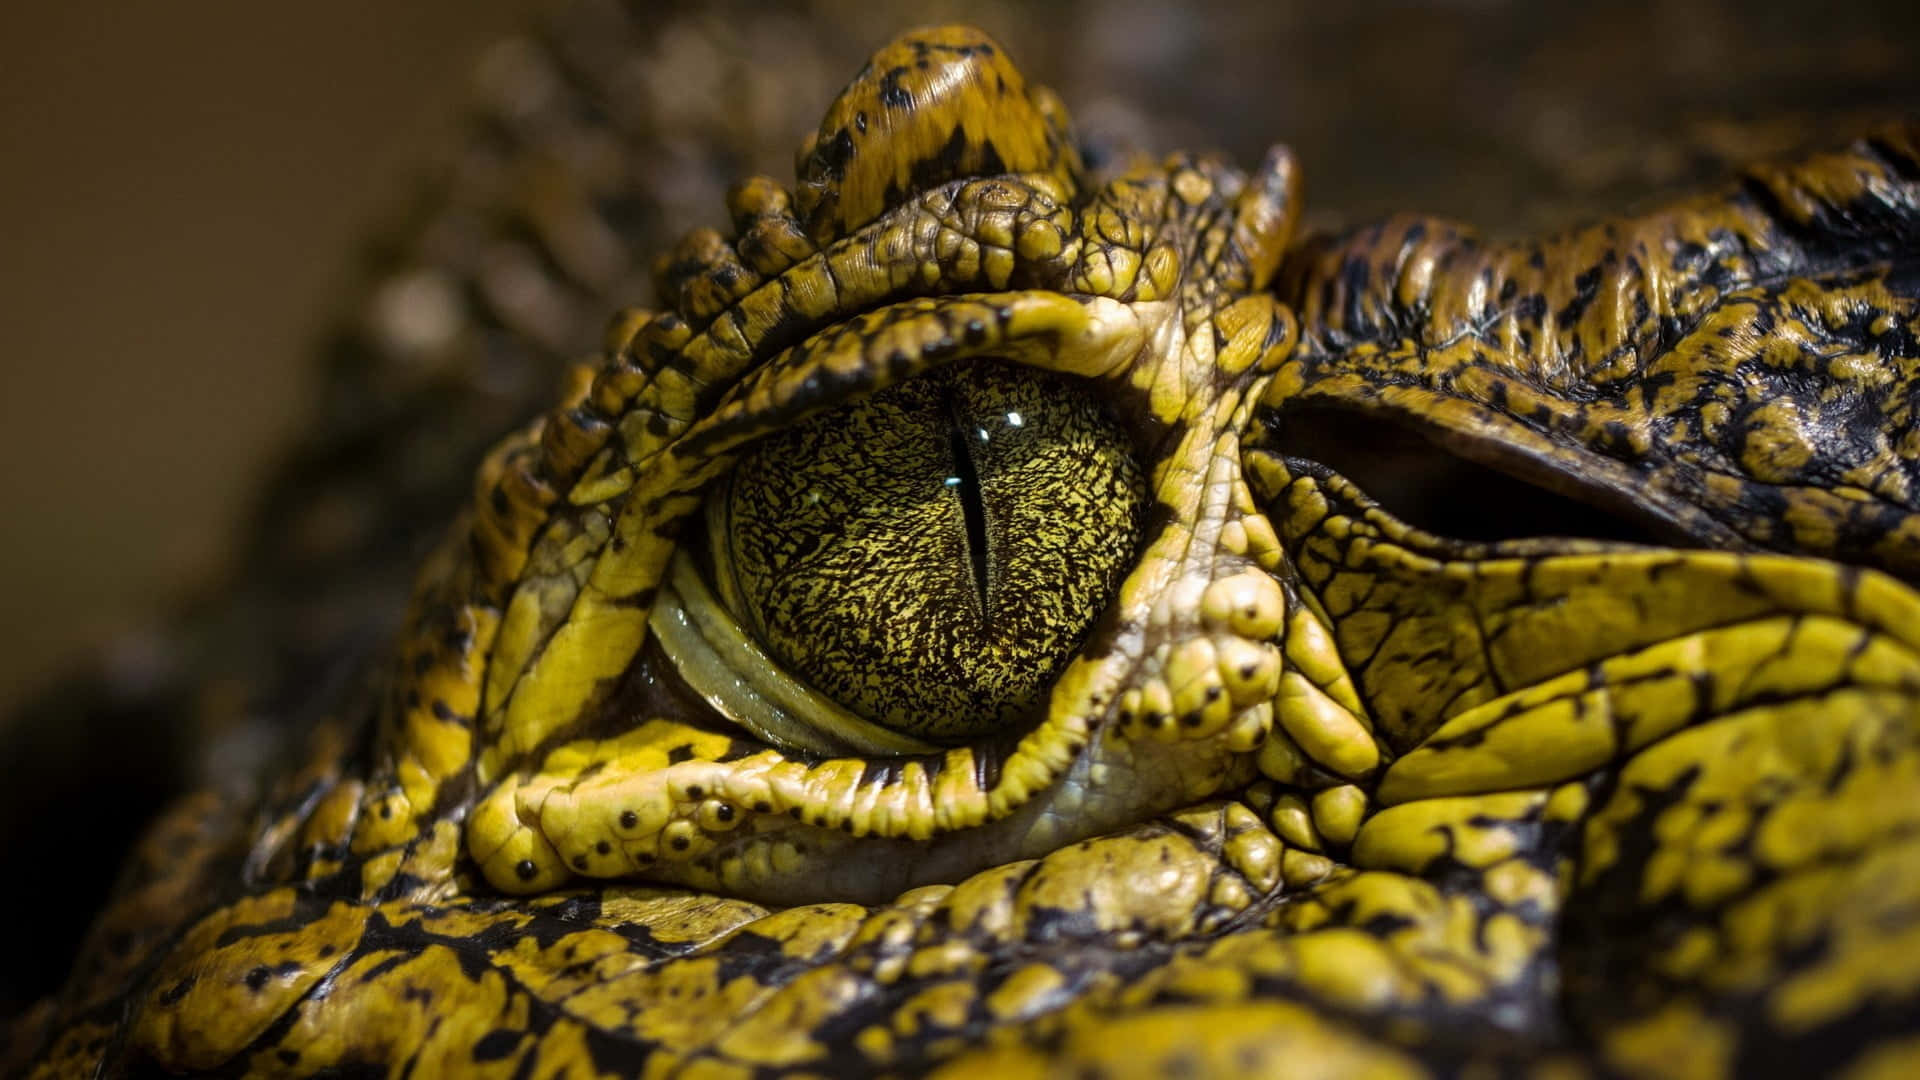 Billedeaf Krokodilleøjne I Close-up.